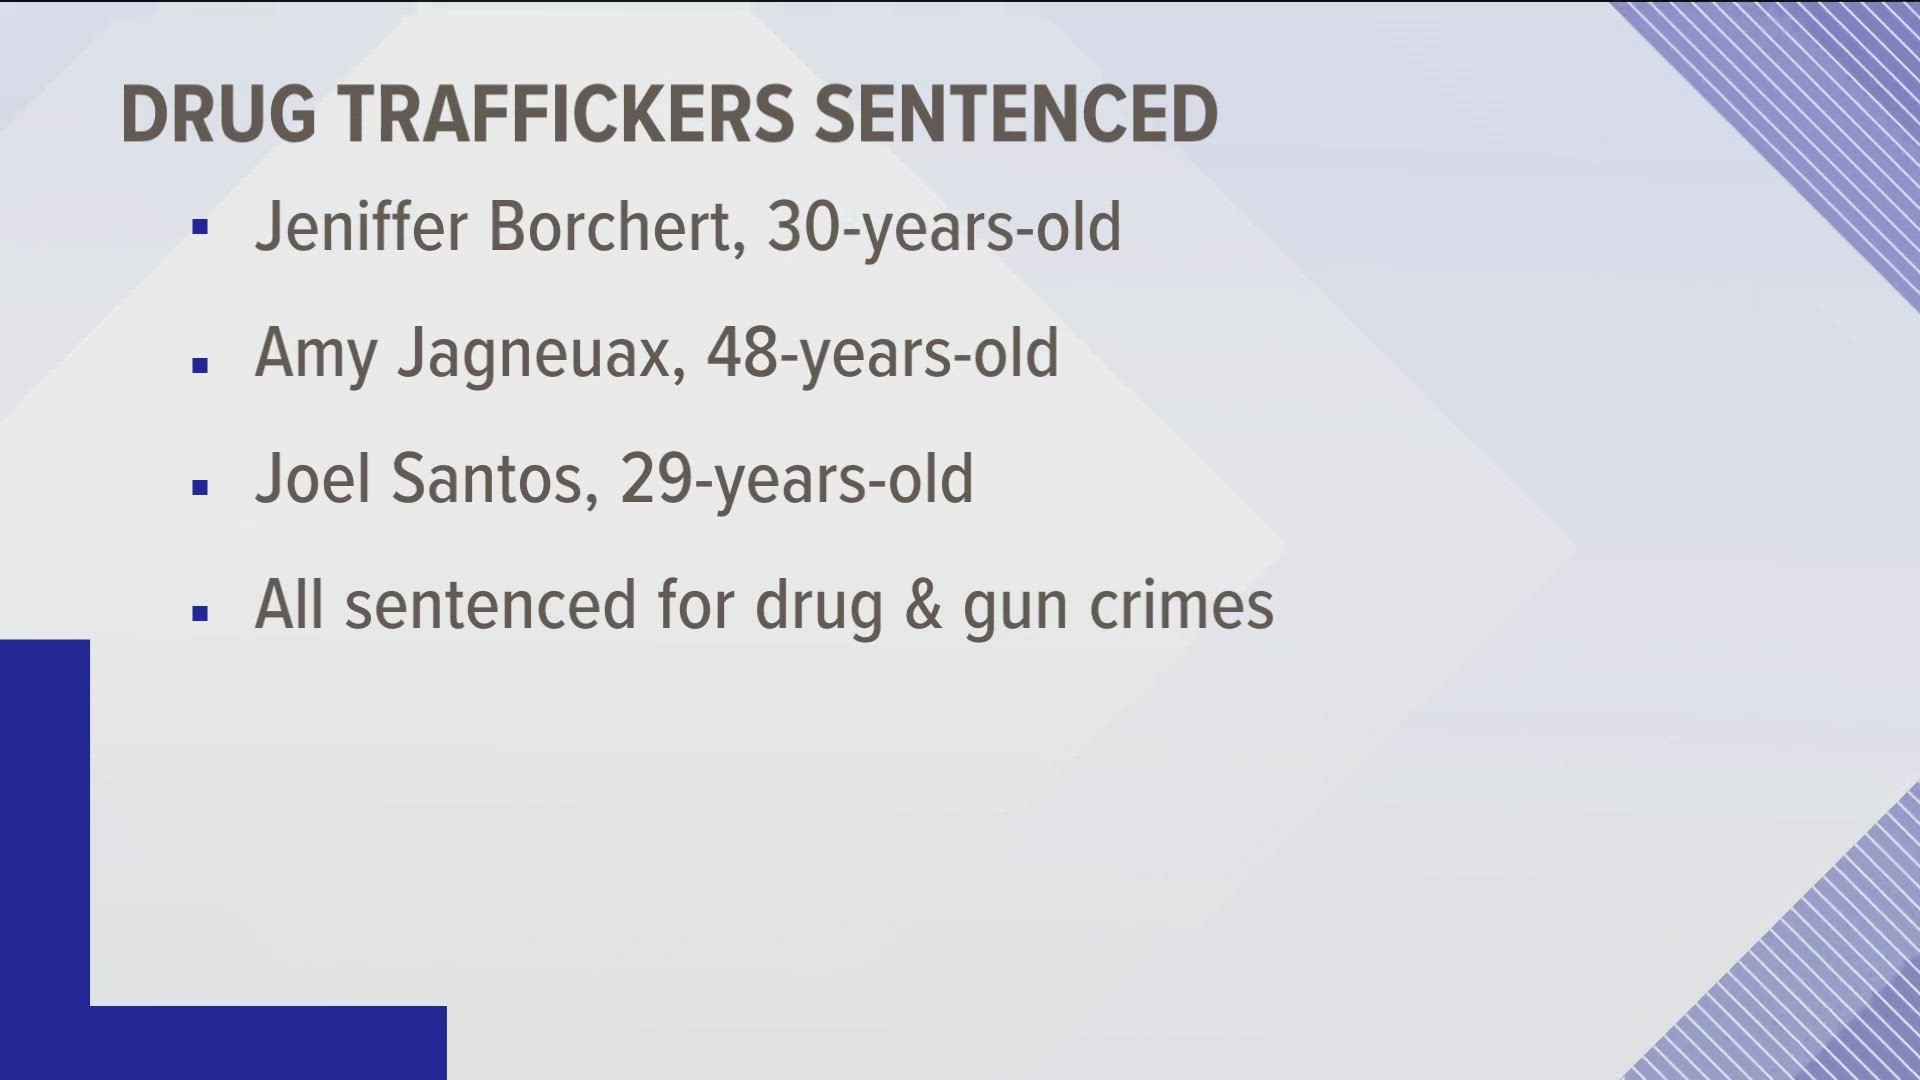 All three people sentenced had distributed fentanyl or methamphetamine.